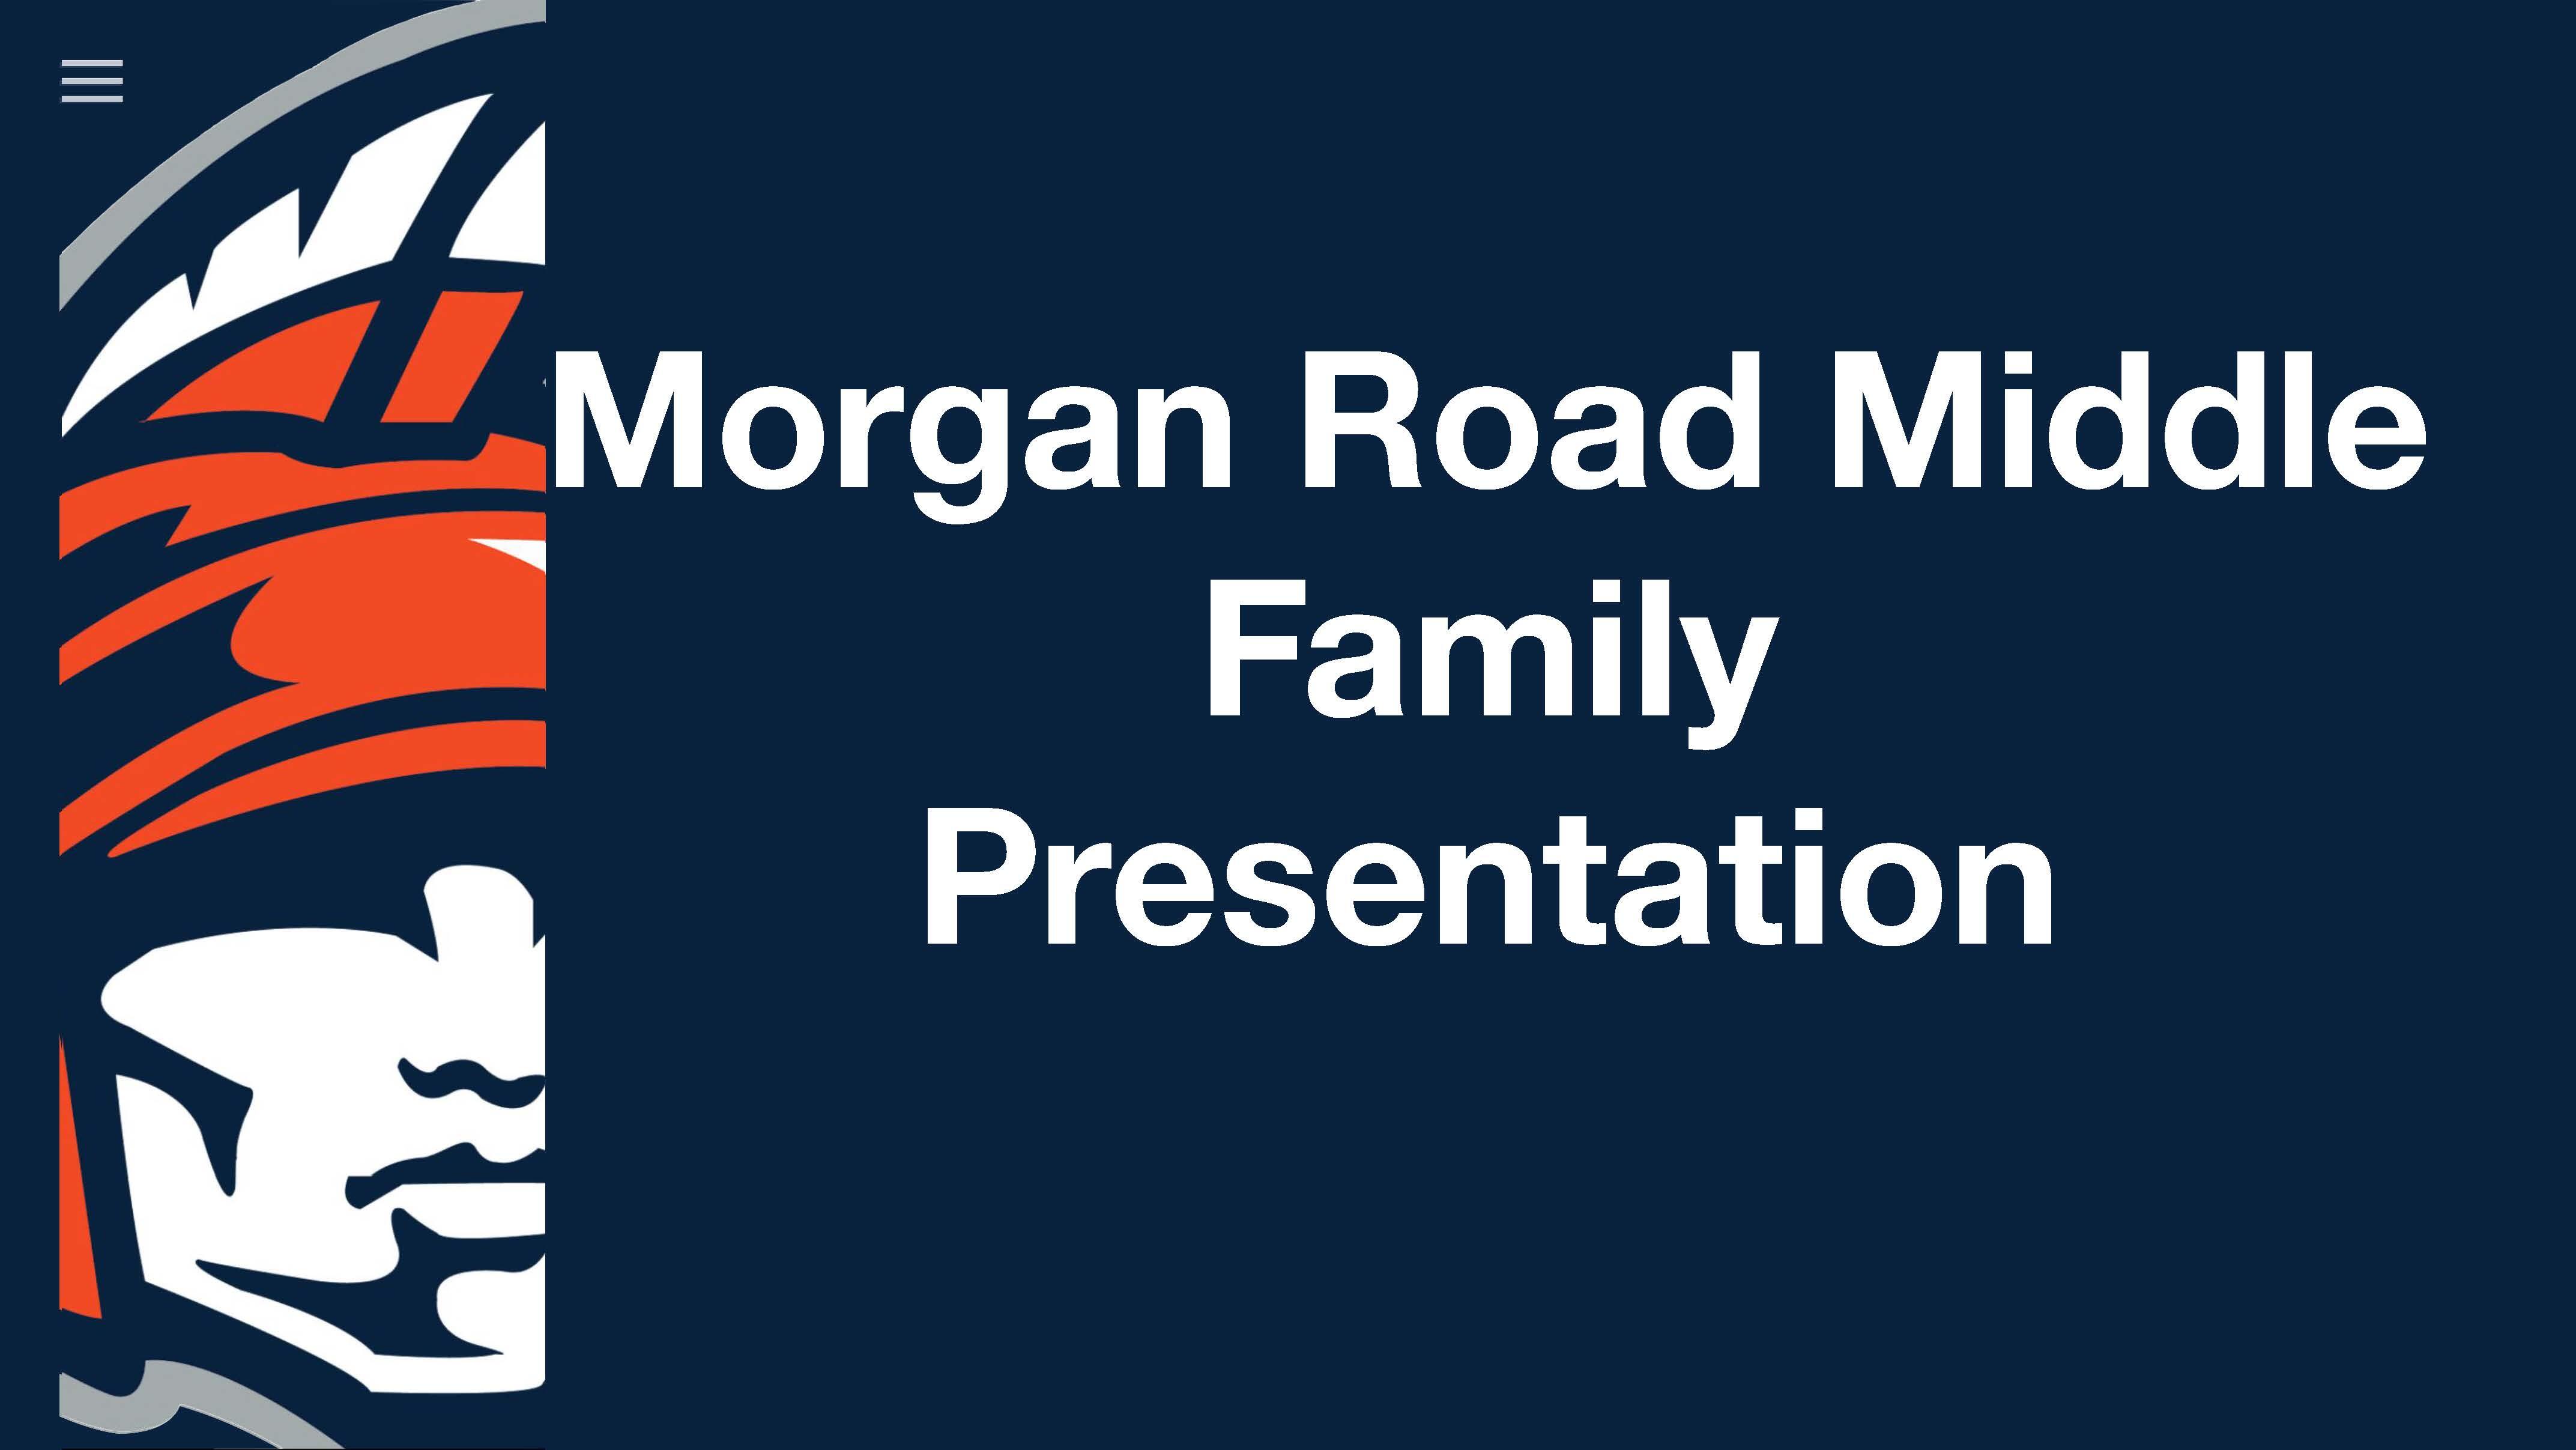 Morgan Road Middle School Education 2020 Presentation